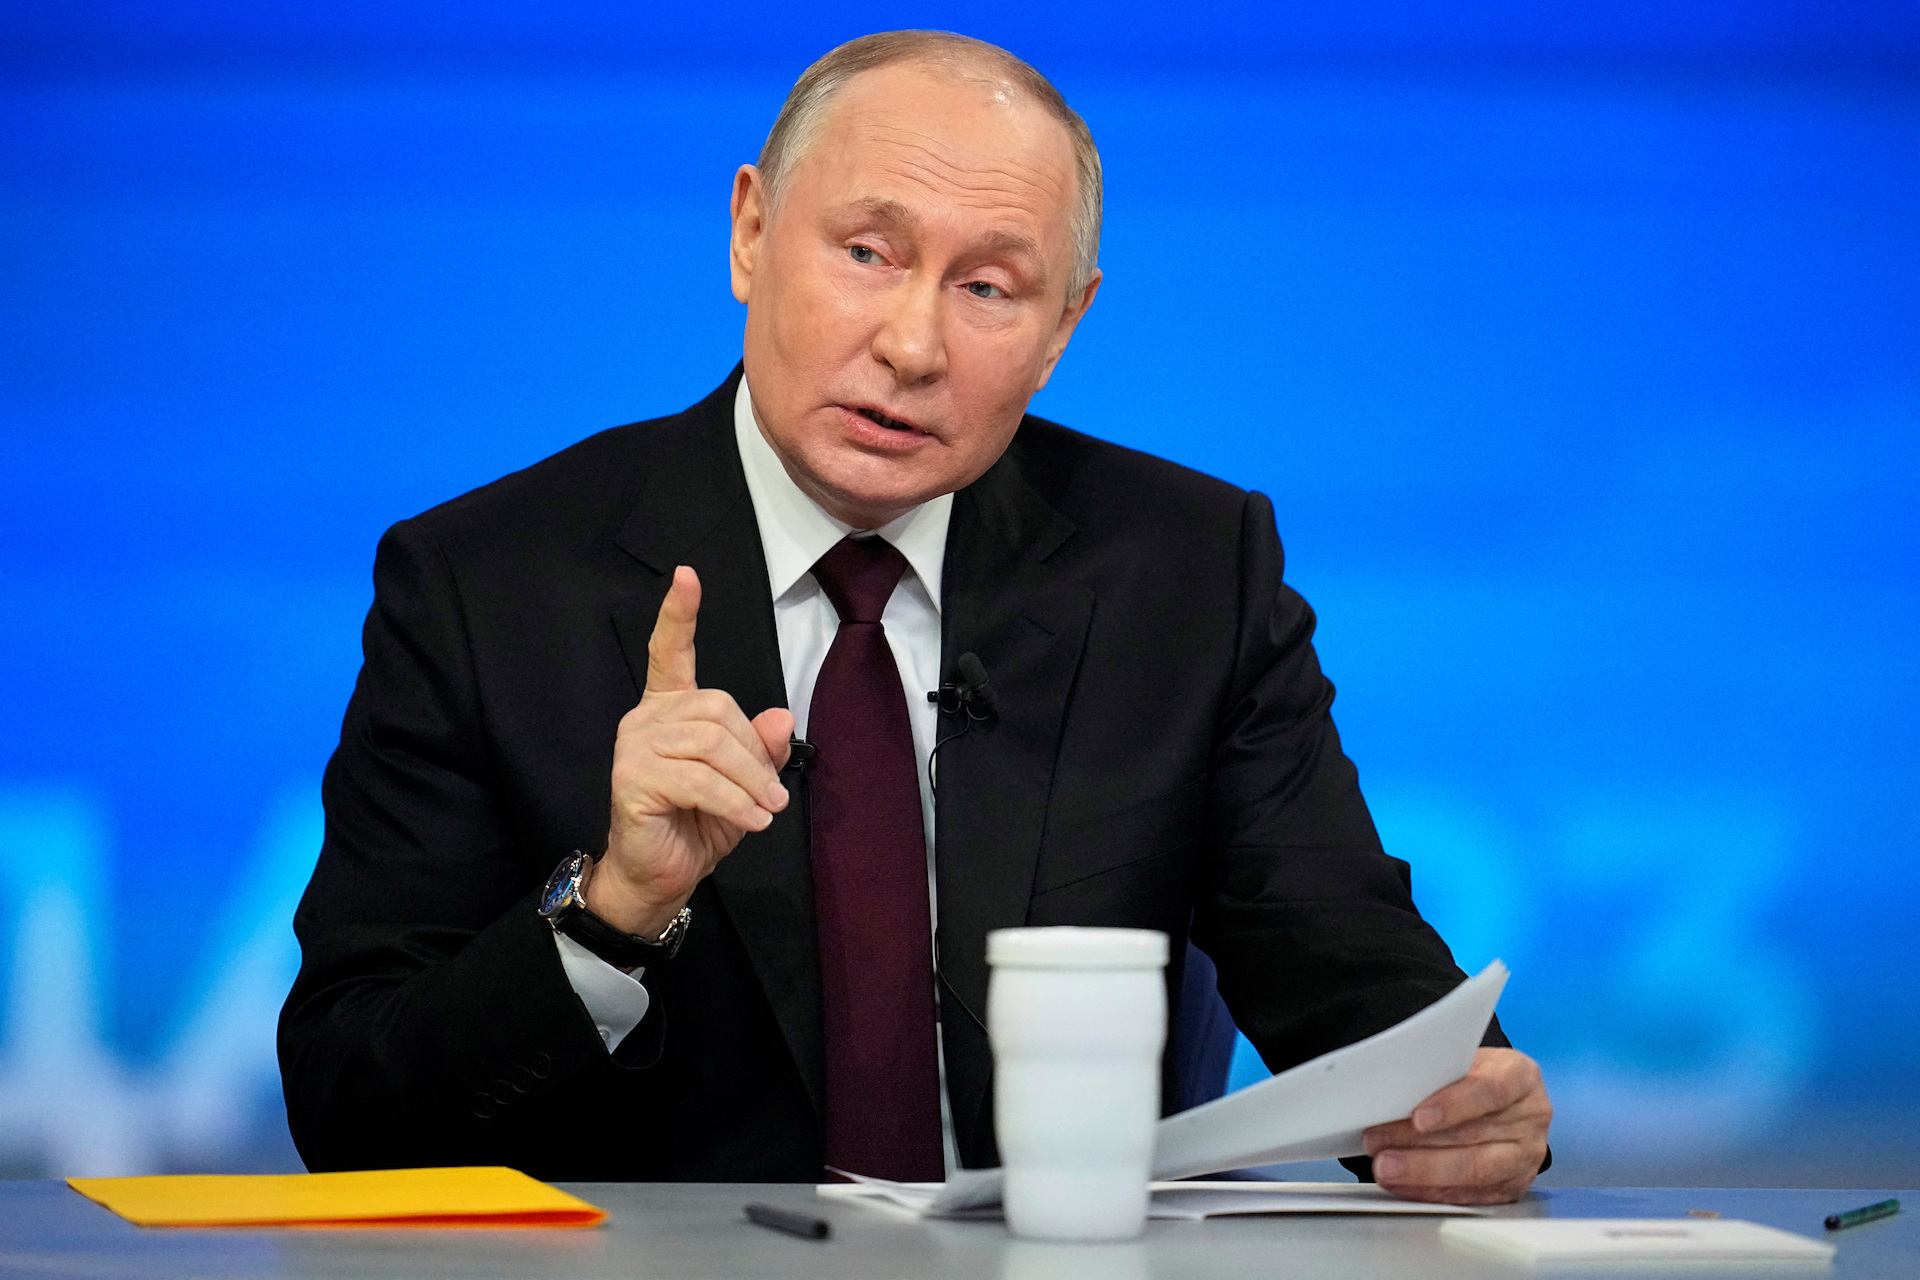 Β.Πούτιν: «Η δραστηριότητα του ΝΑΤΟ έχει αυξηθεί απότομα – Δυνάμεις από τις ΗΠΑ έχουν αναπτυχθεί στα σύνορά μας»